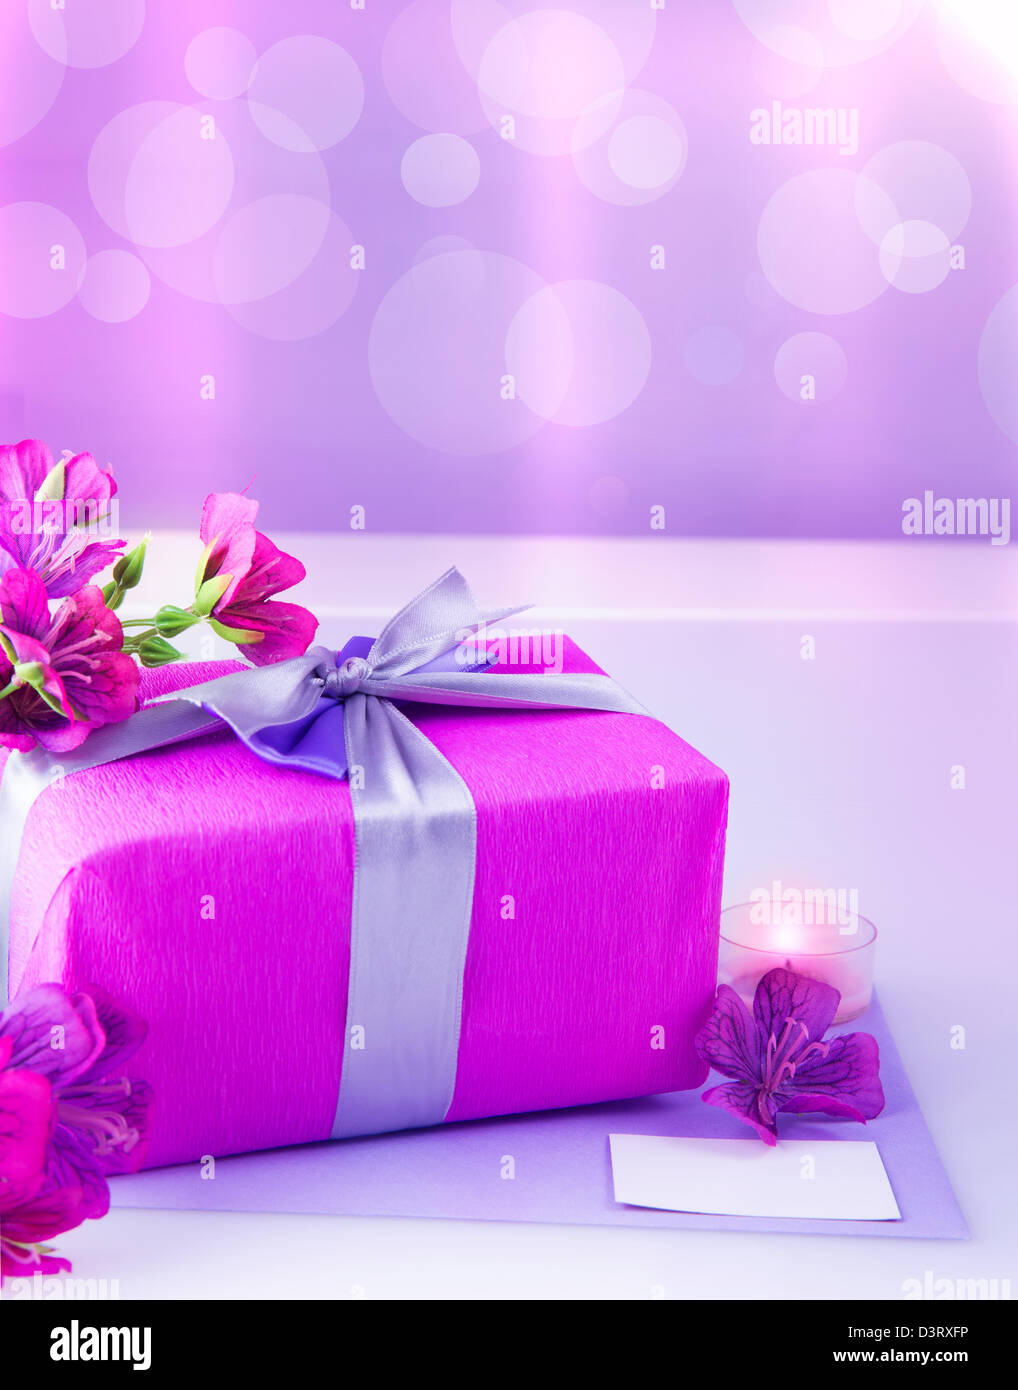 Foto von rosa Geschenkbox mit lila Seidenband, wunderschöne violette wilde Blumen Blumenstrauß, Kerze und weiße leere Grußkarte Stockfoto